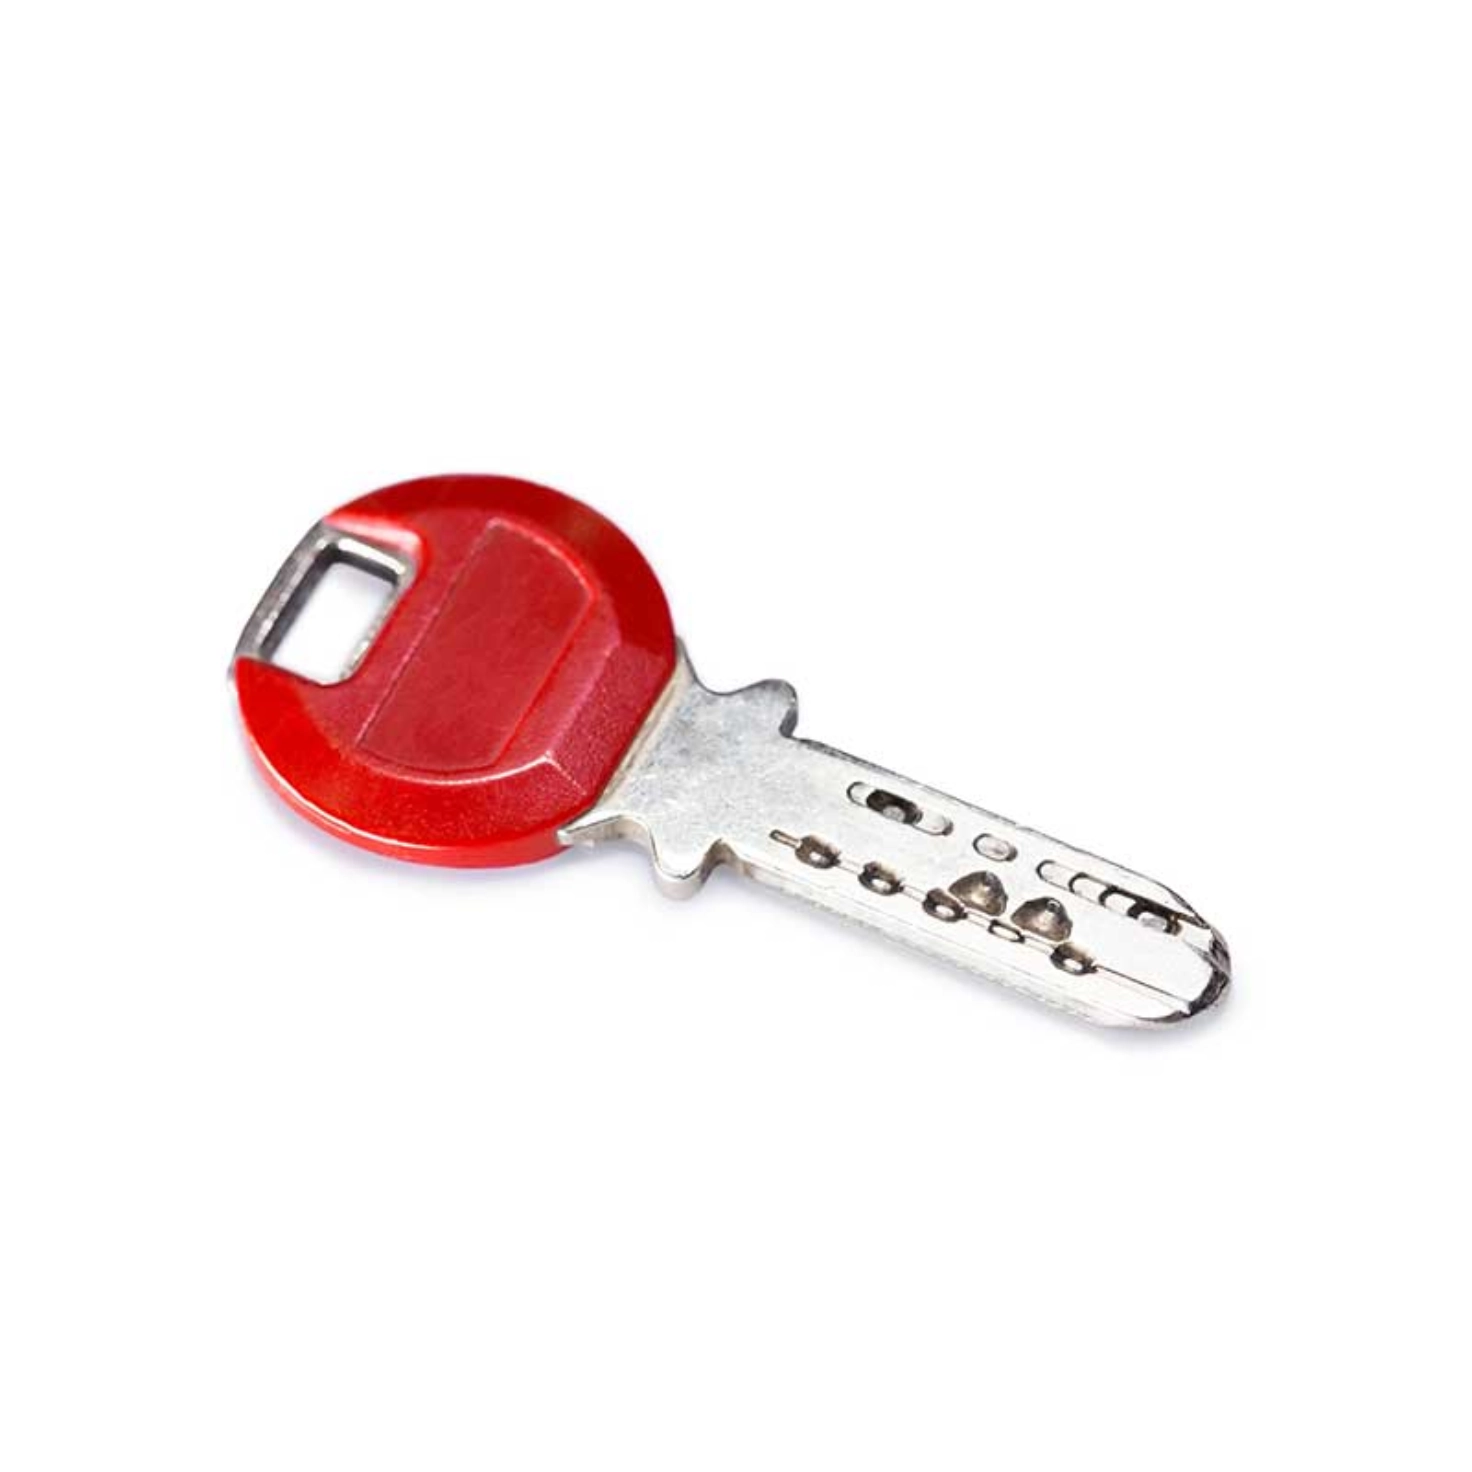 Une clé de voiture ou d'appartement sur un fond neutre.